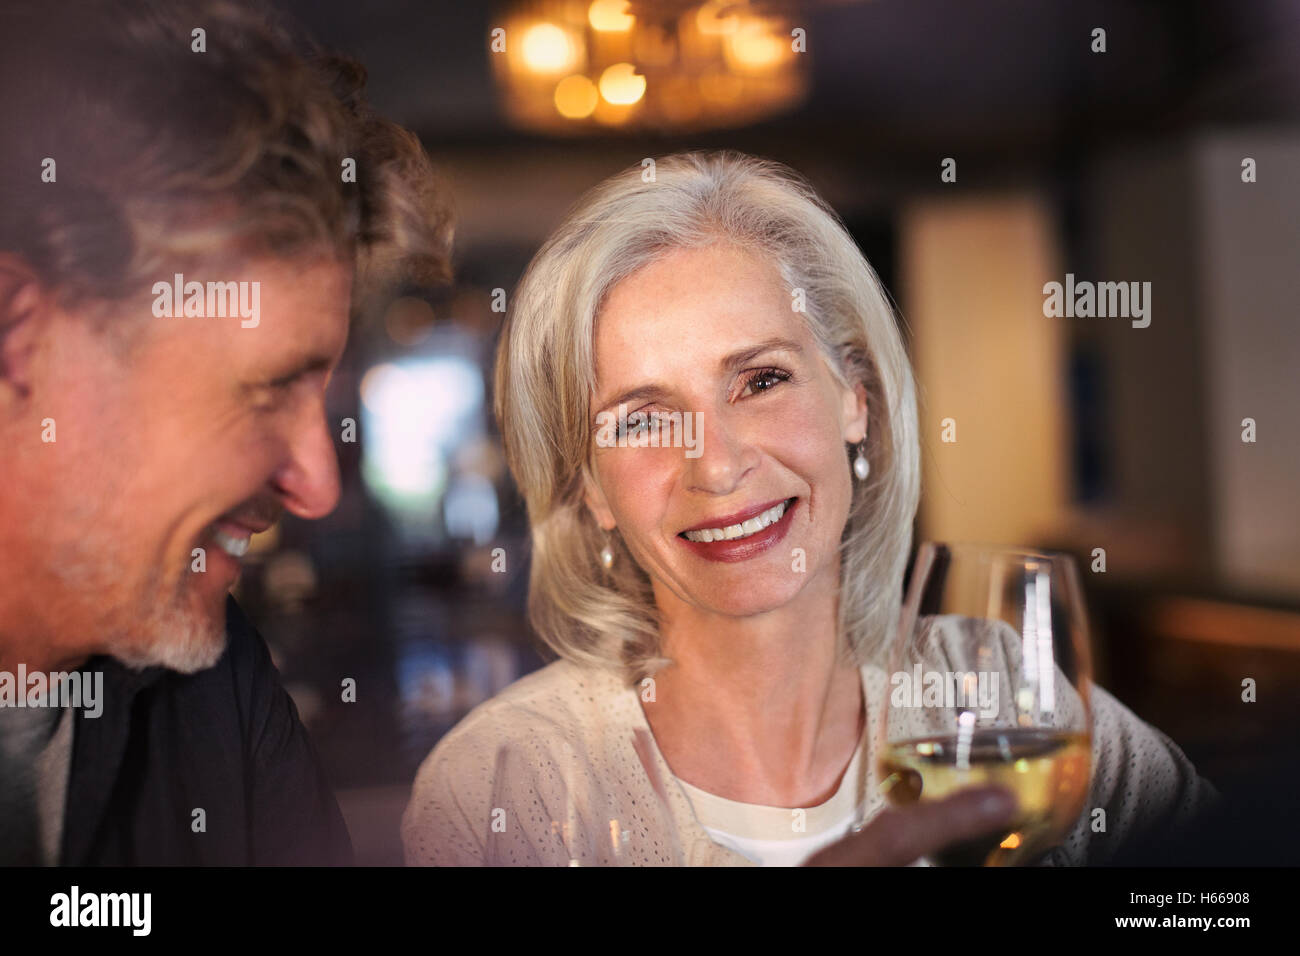 Porträt lächelnd älteres paar trinken Weißwein in bar Stockfoto